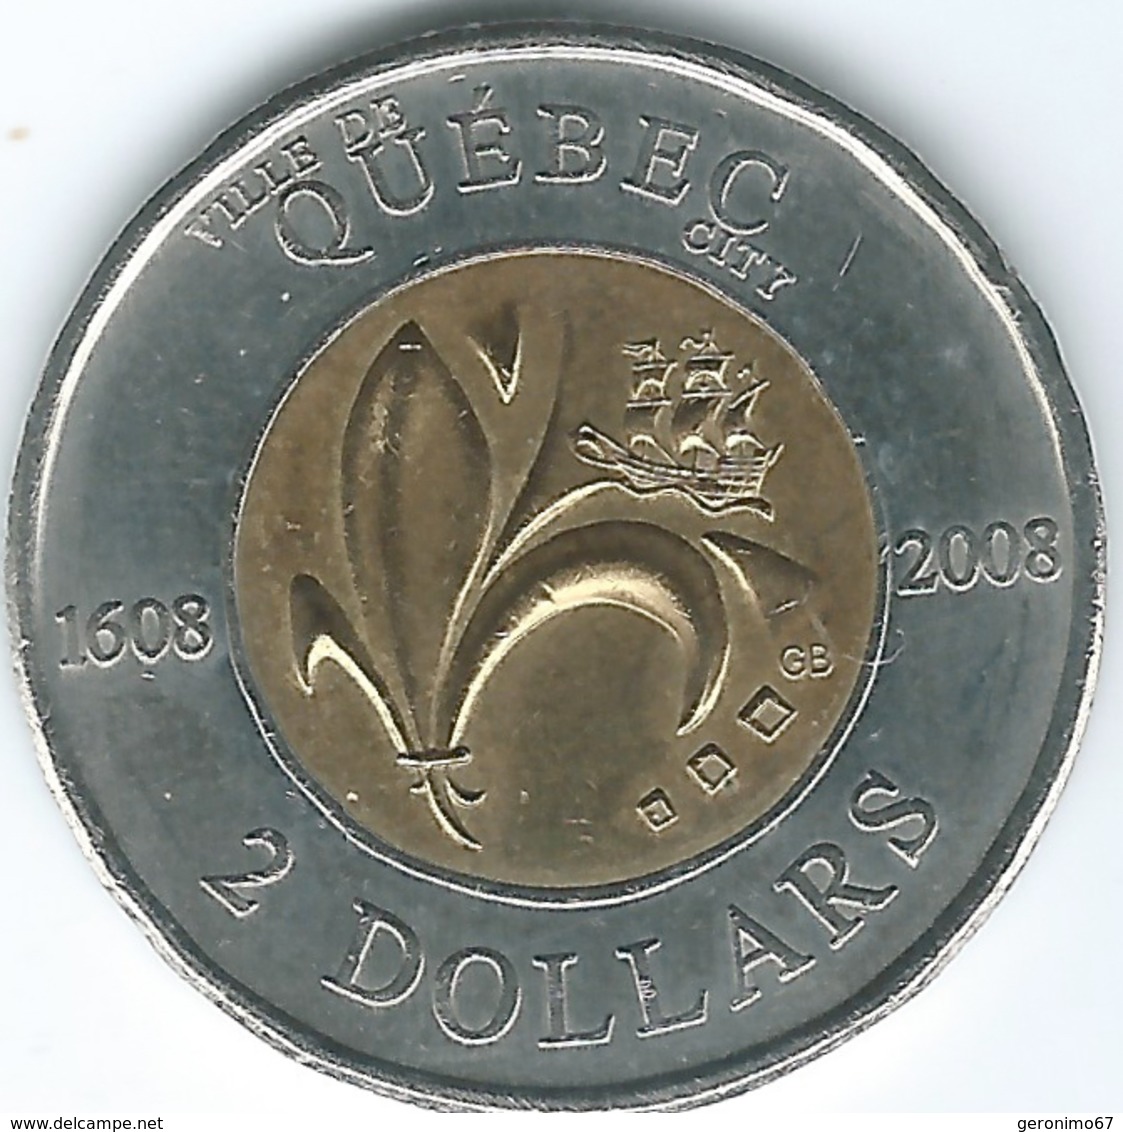 Canada - Elizabeth II - 2008 - 2 Dollars - Quebec City 400th Anniversary - KM1040 - Canada